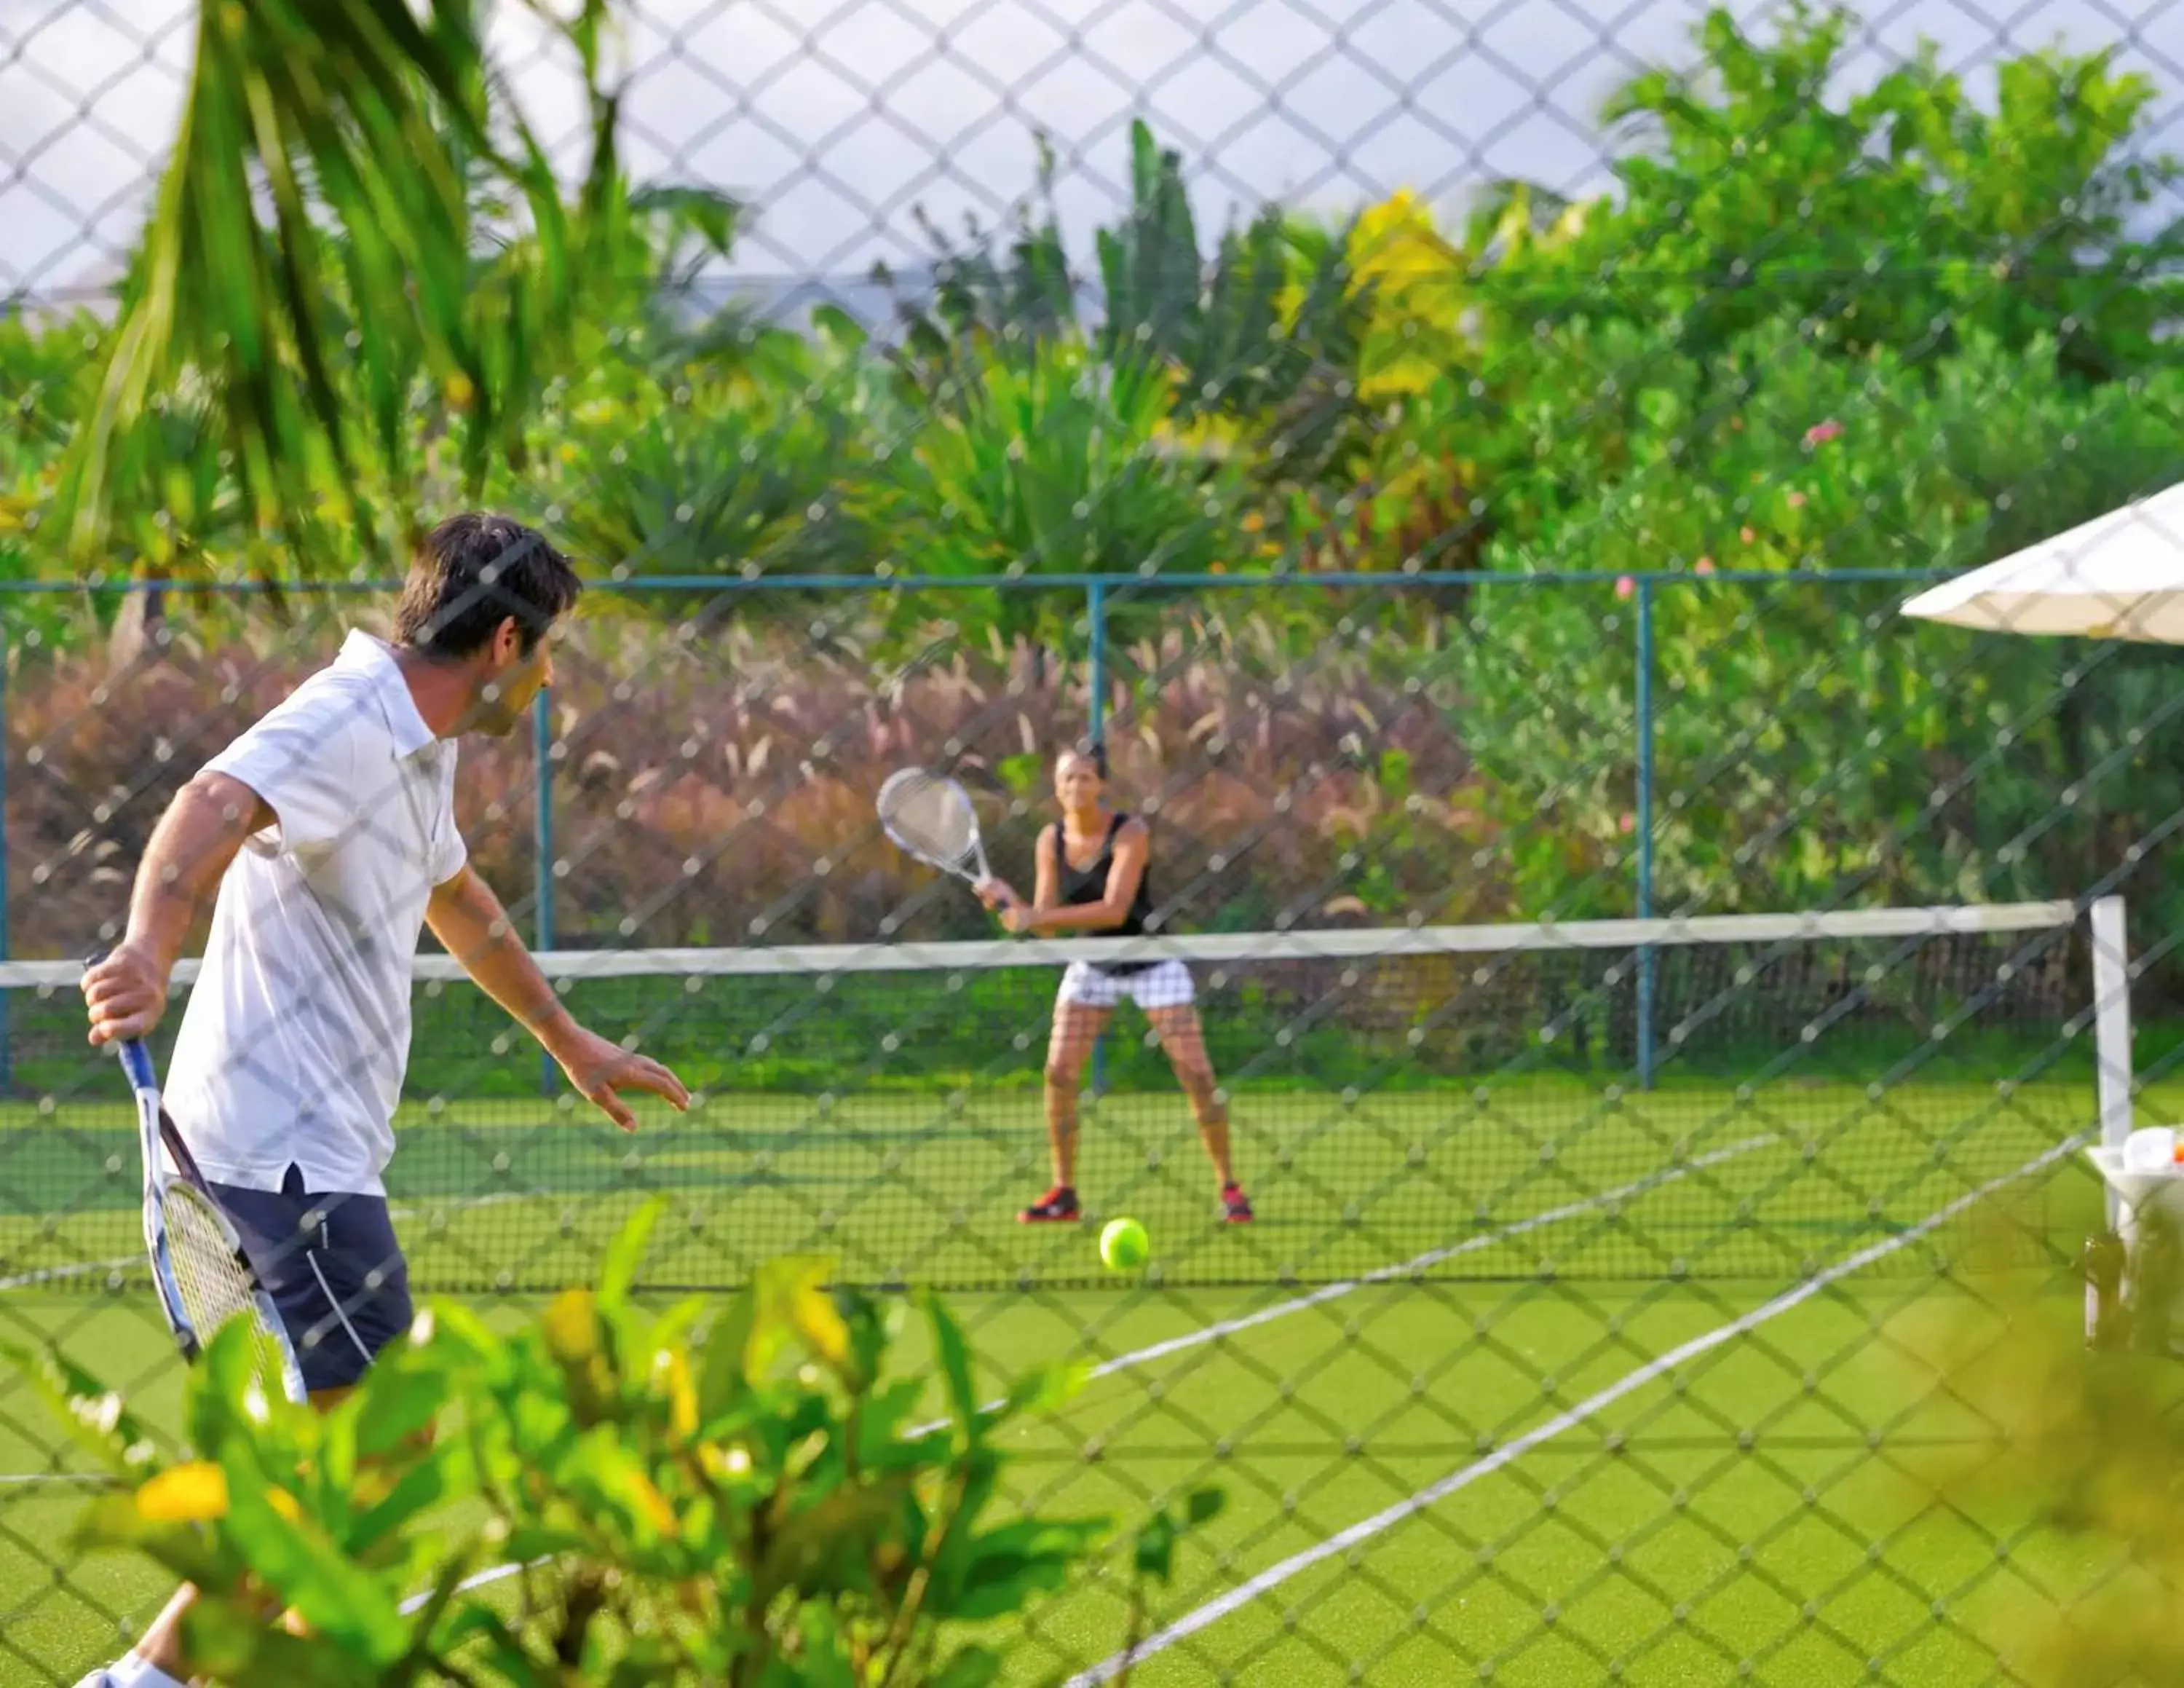 Tennis court, Other Activities in Sofitel Sanya Leeman Resort